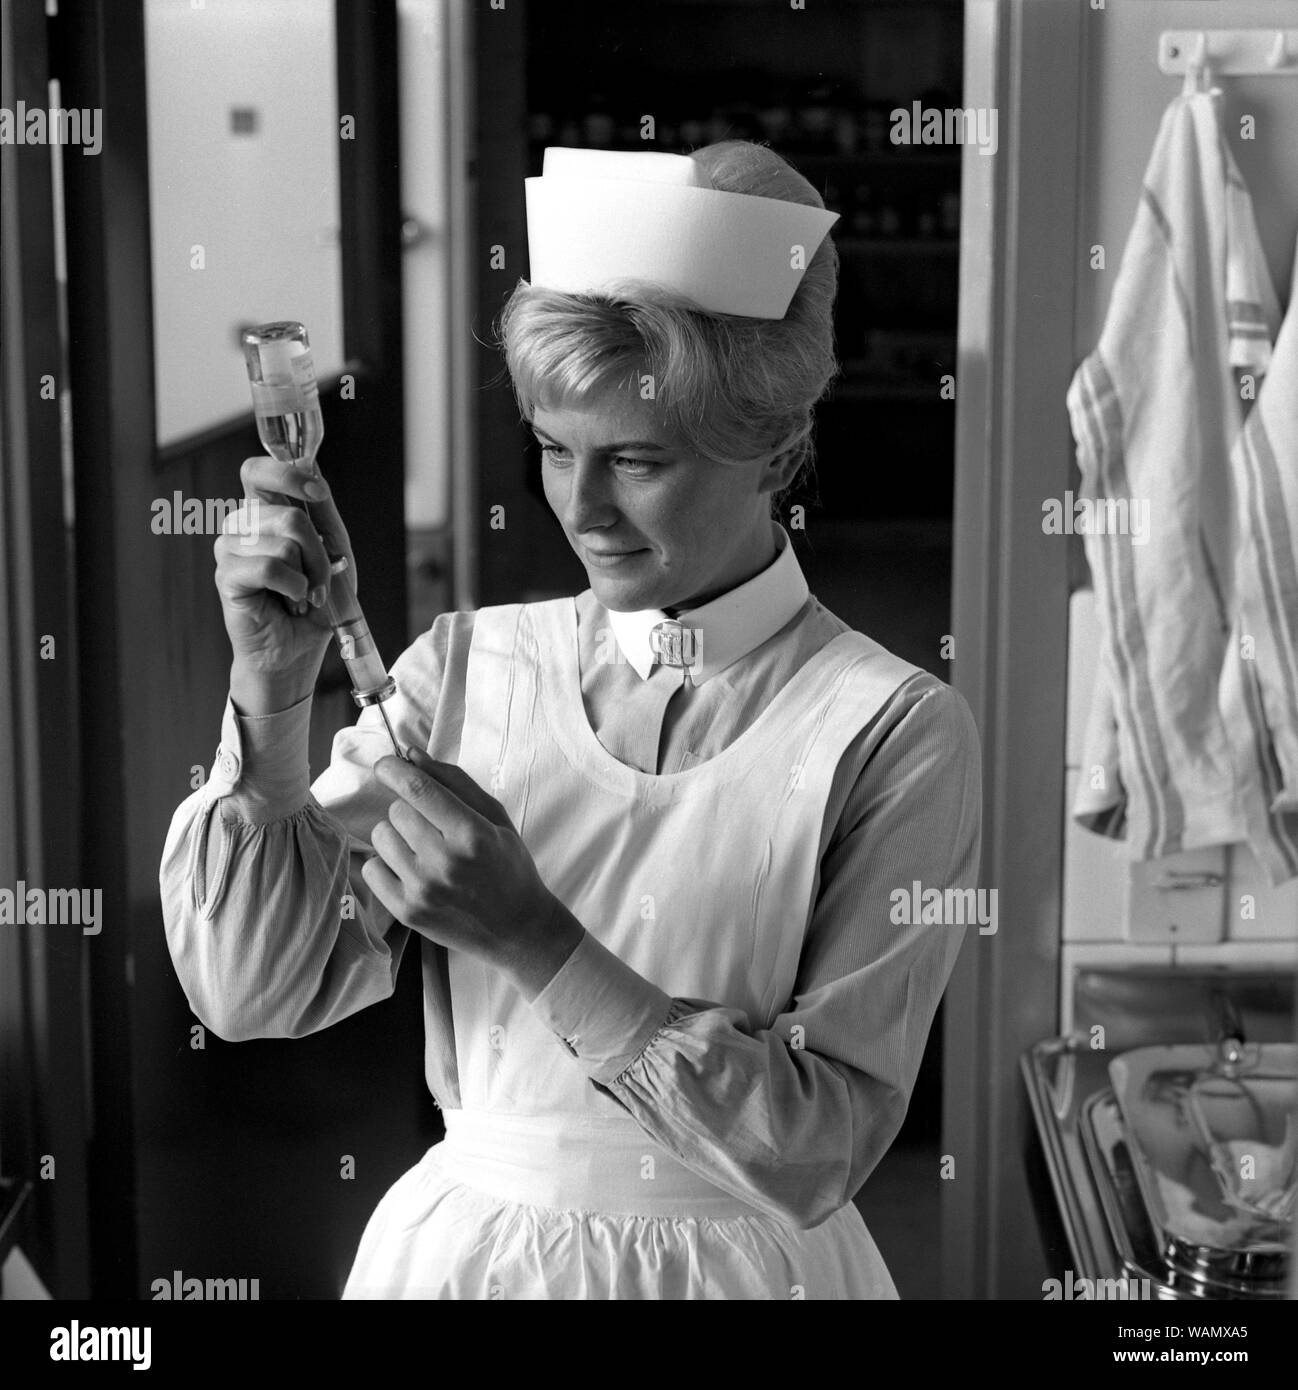 Enfermera en el decenio de 1960. Una mujer en un uniforme de enfermera está preparando una inyección y aspira el líquido de una botella de medicamento en una jeringa. septiembre de 1963. Foto de stock